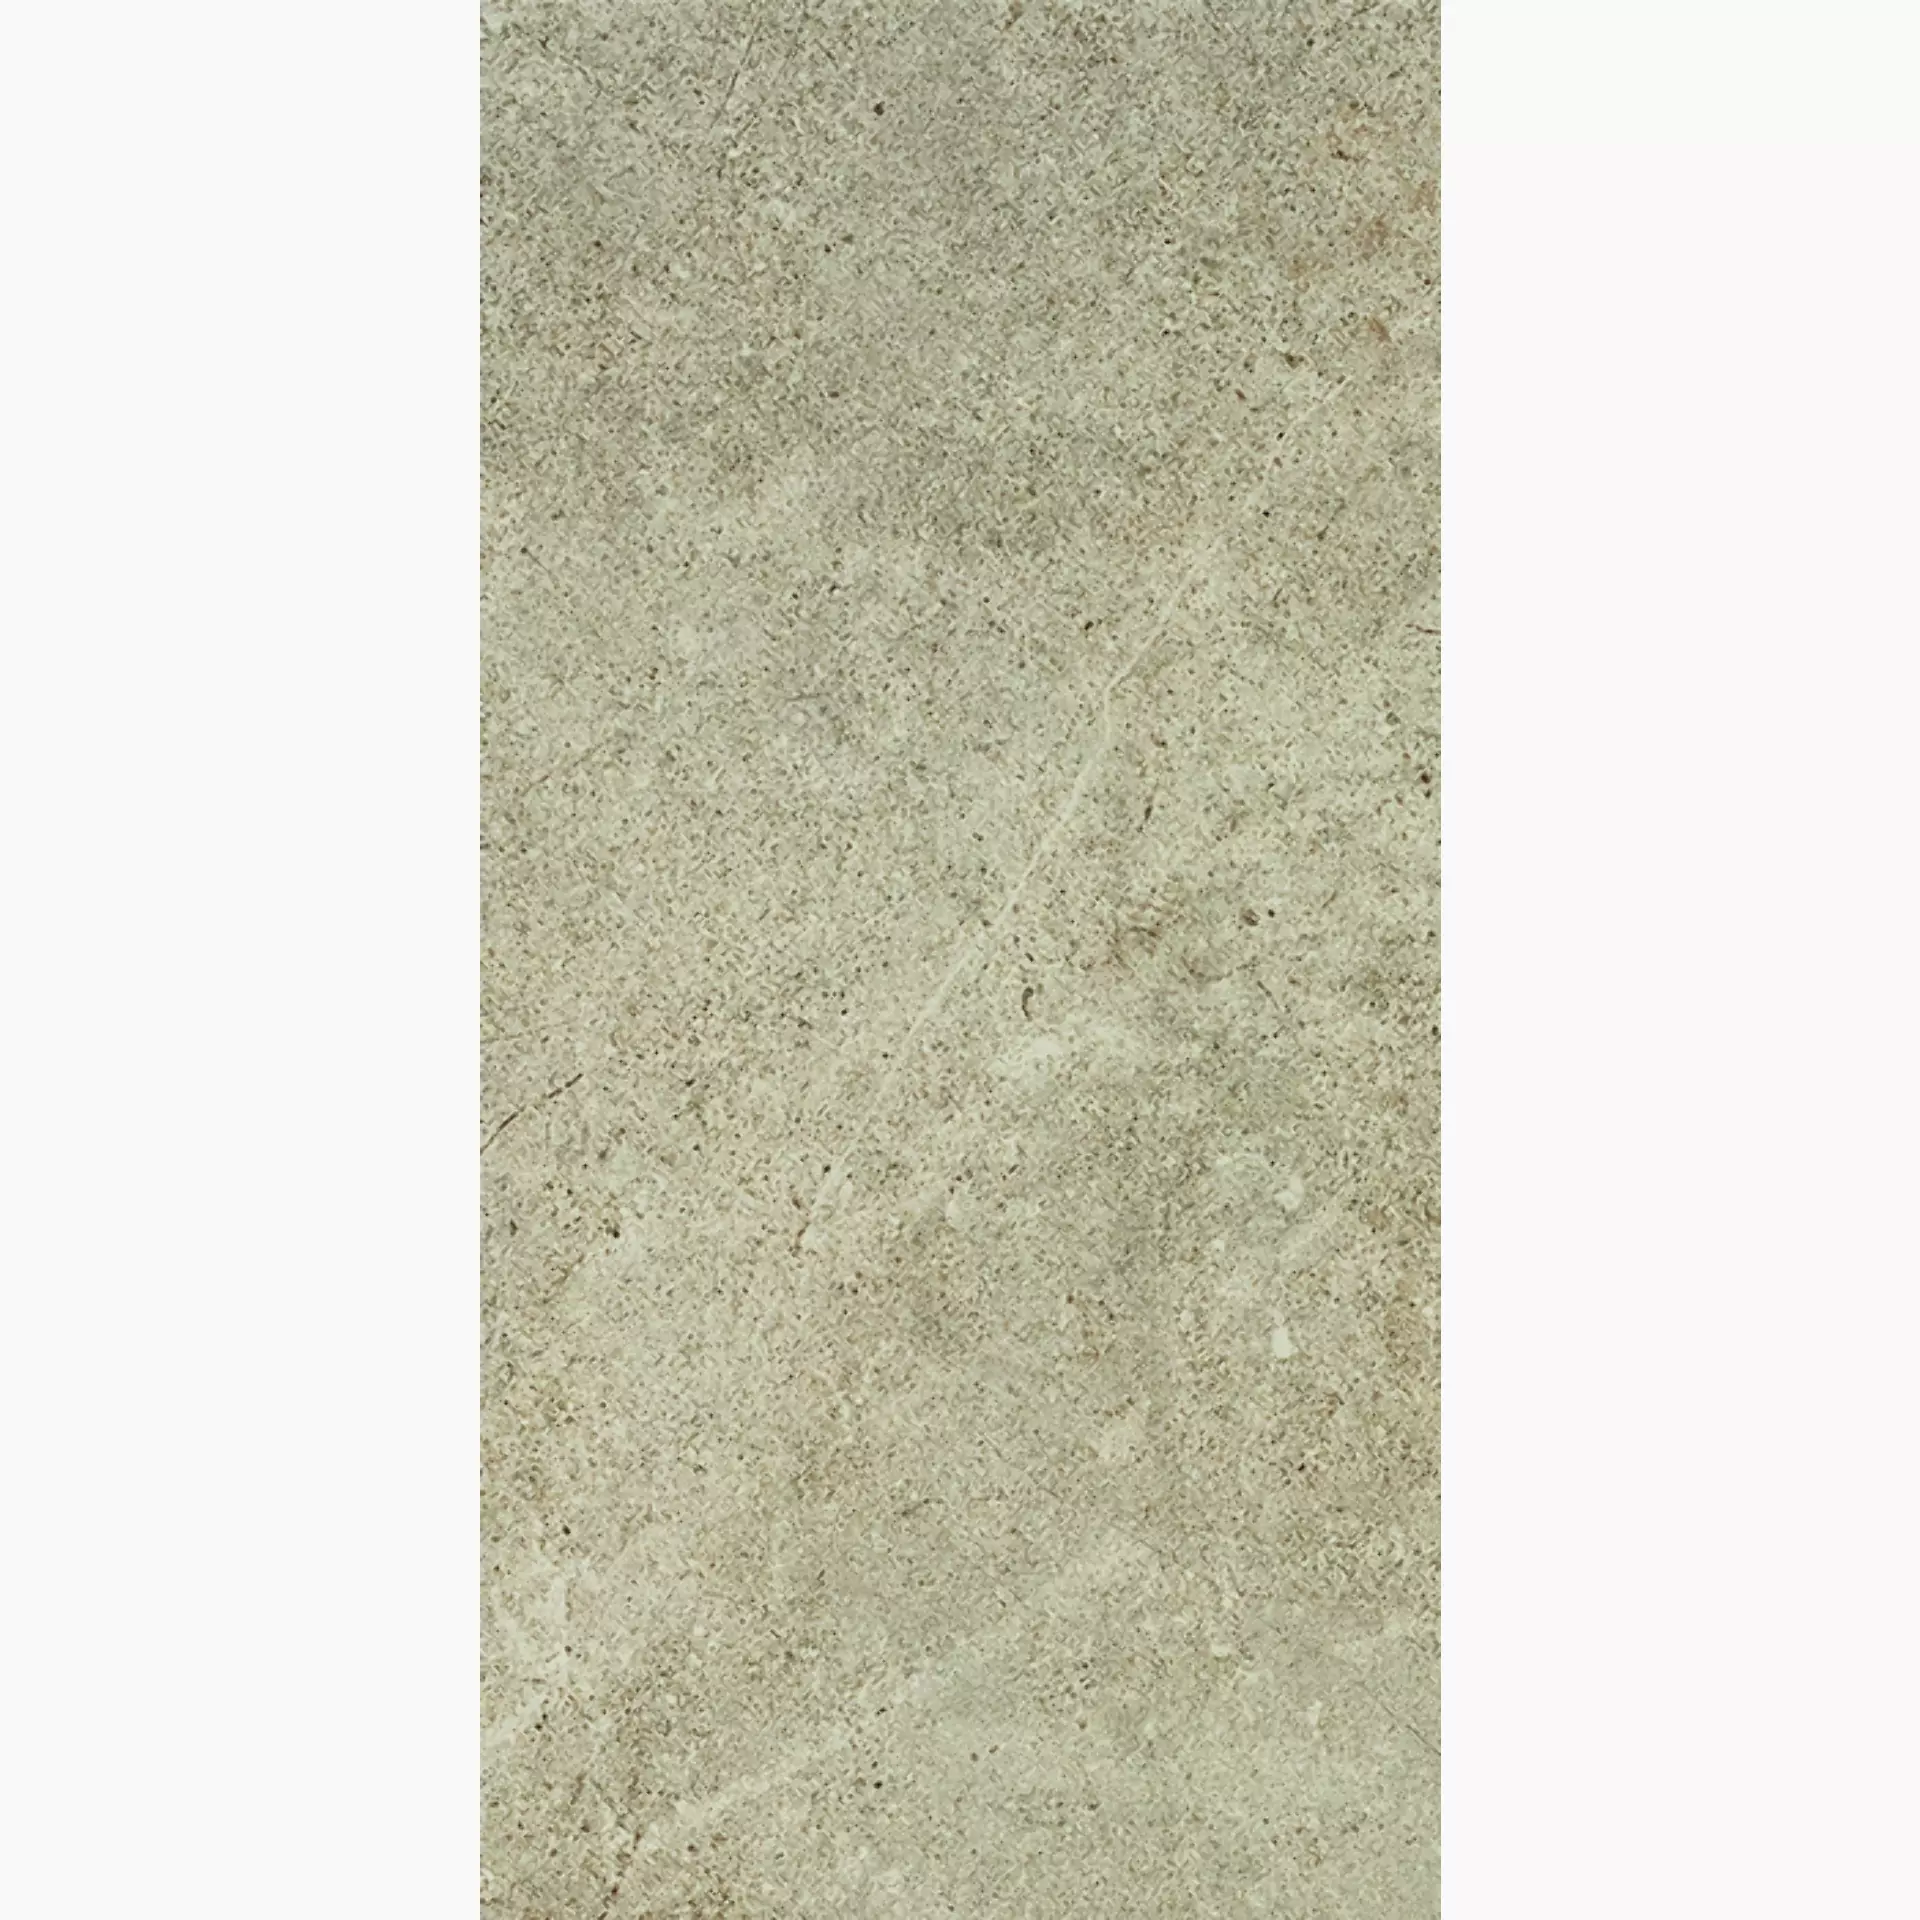 Bodenfliese,Wandfliese Cercom Archistone Sand Antislip Sand 1082619 rutschhemmend 30x60cm rektifiziert 9,5mm